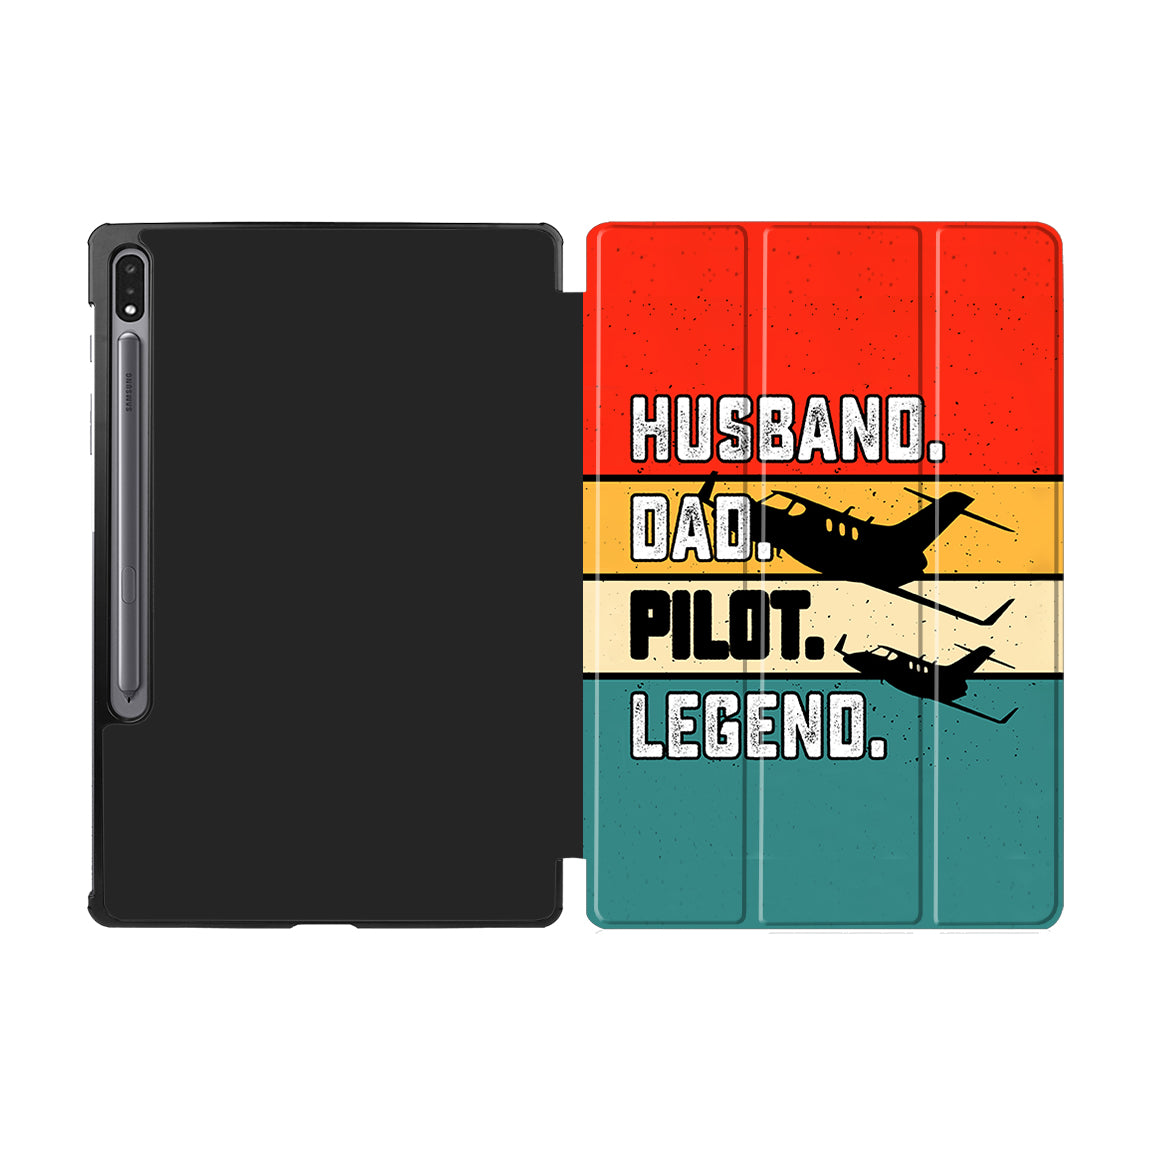 Husband & Dad & Pilot & Legend Designed Samsung Tablet Cases